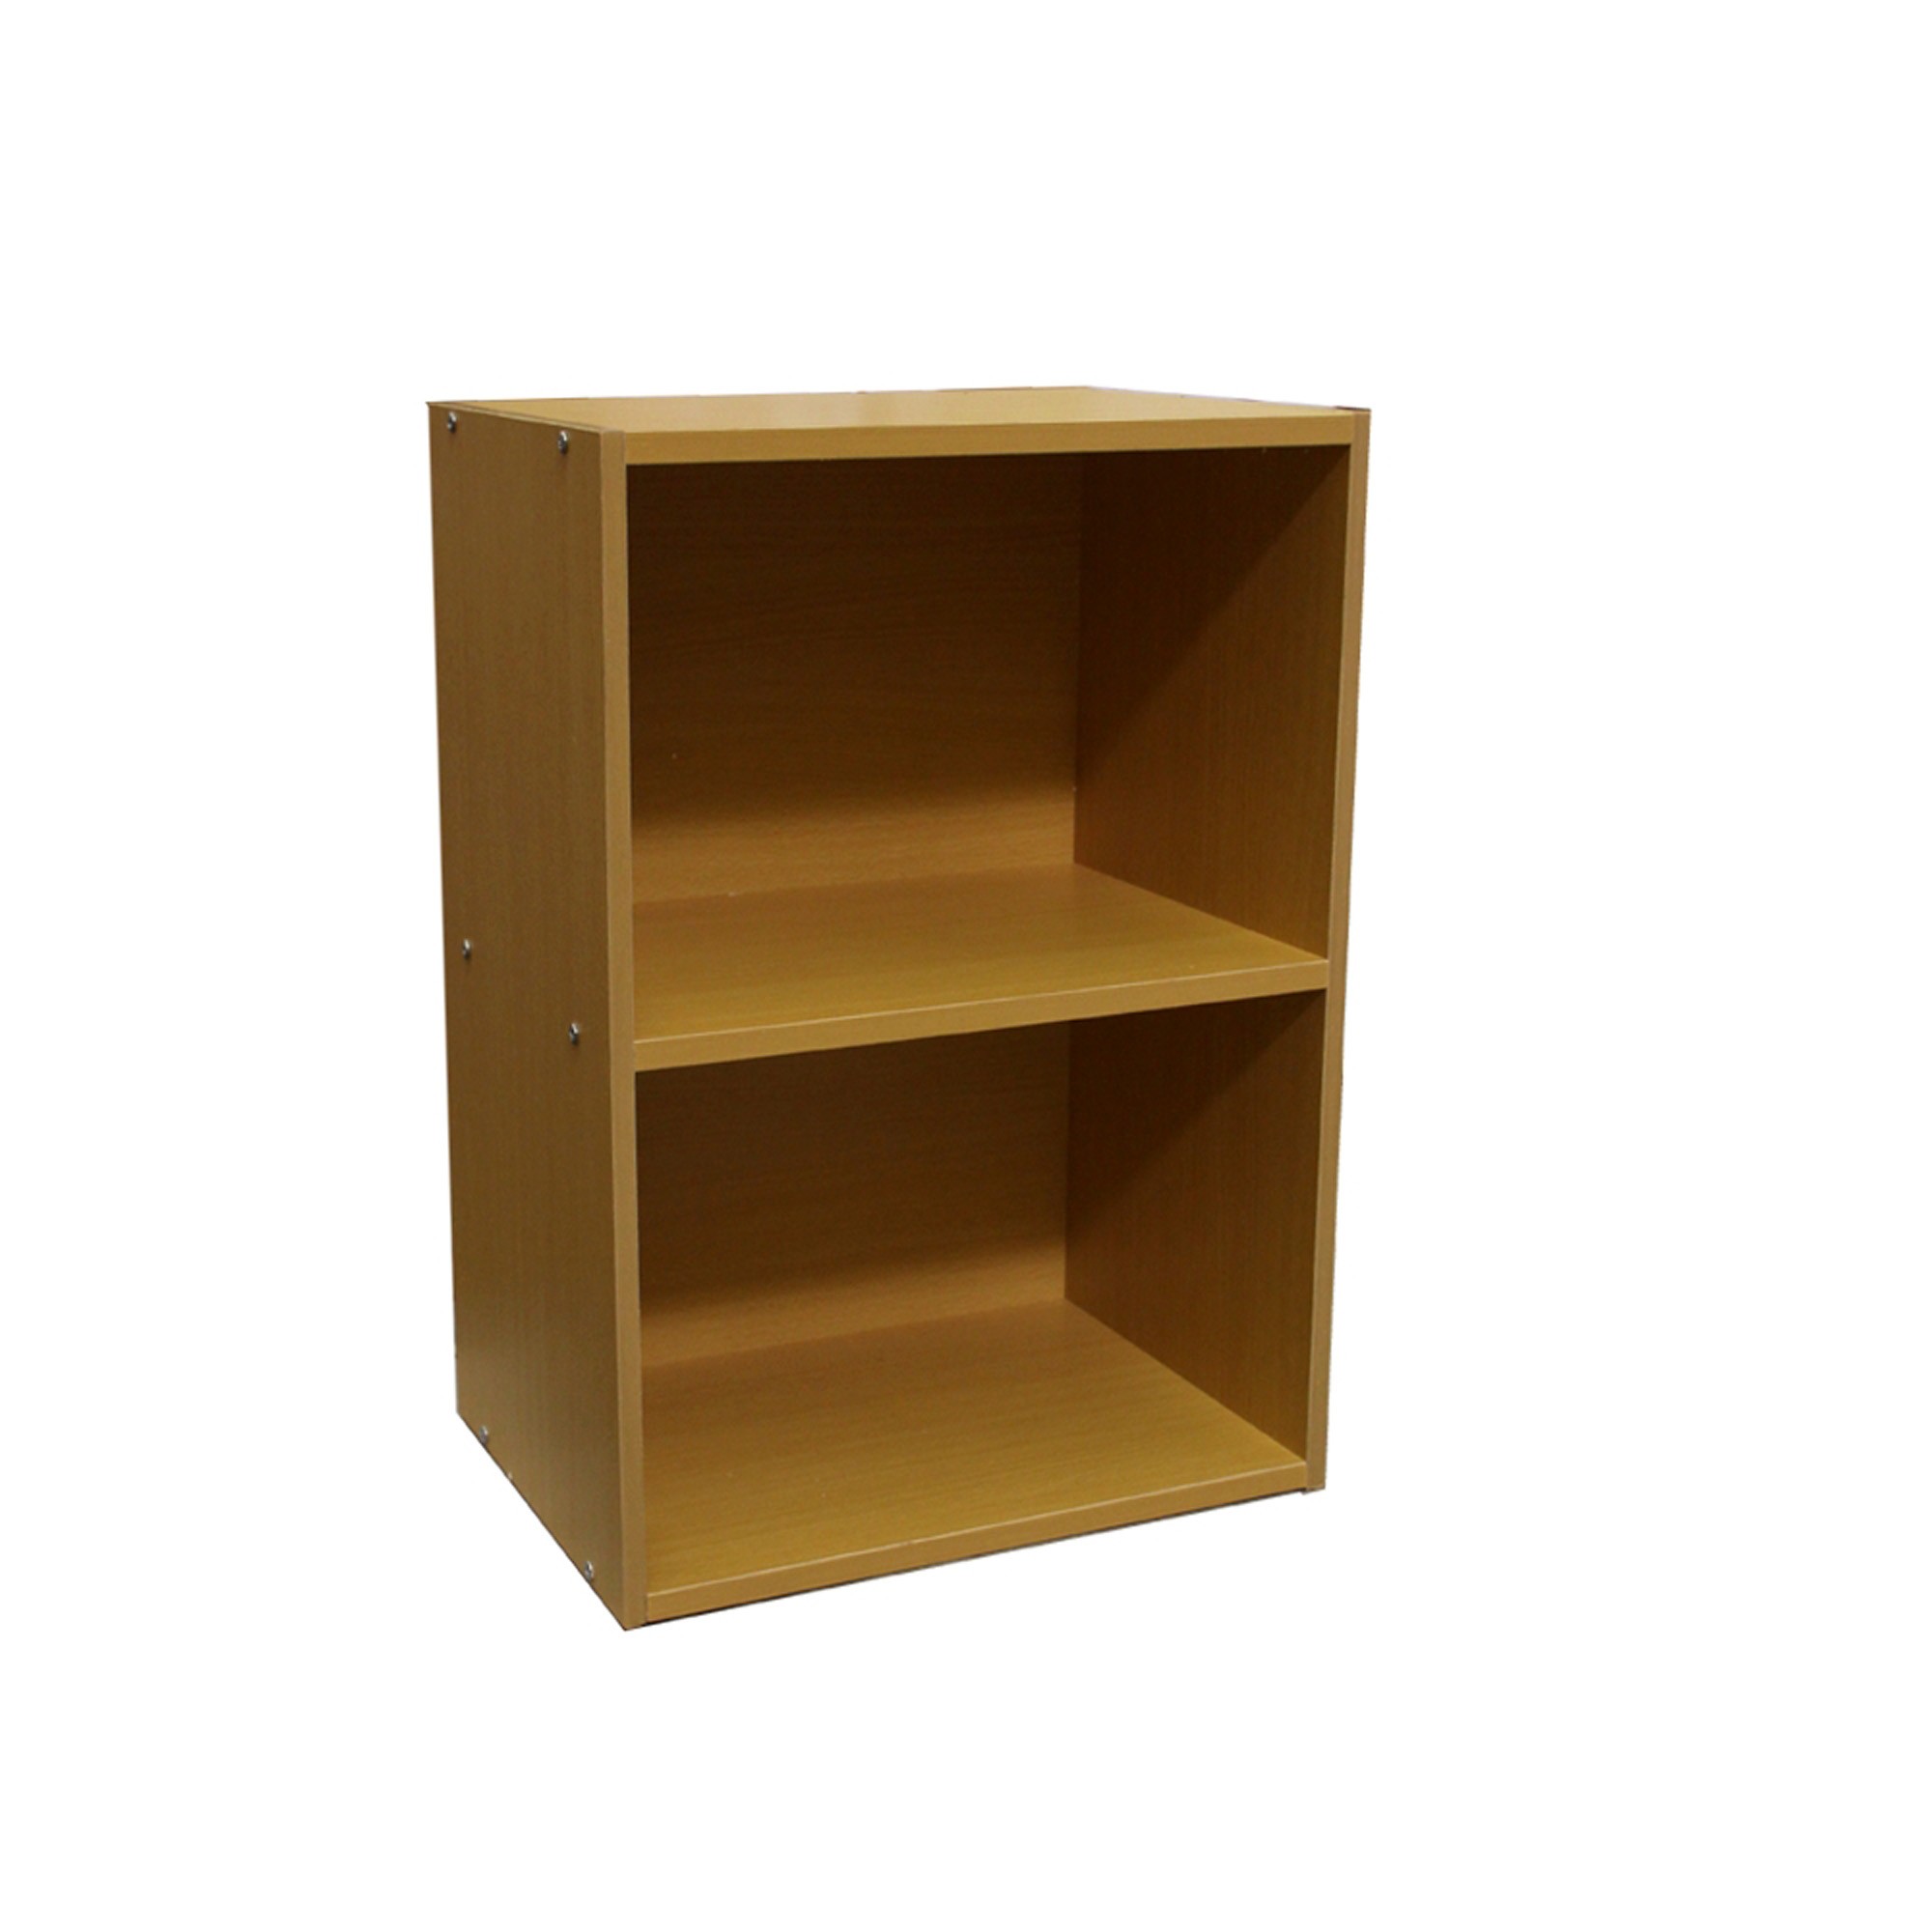 Standard Natural Finish Adjustable Book Shelf